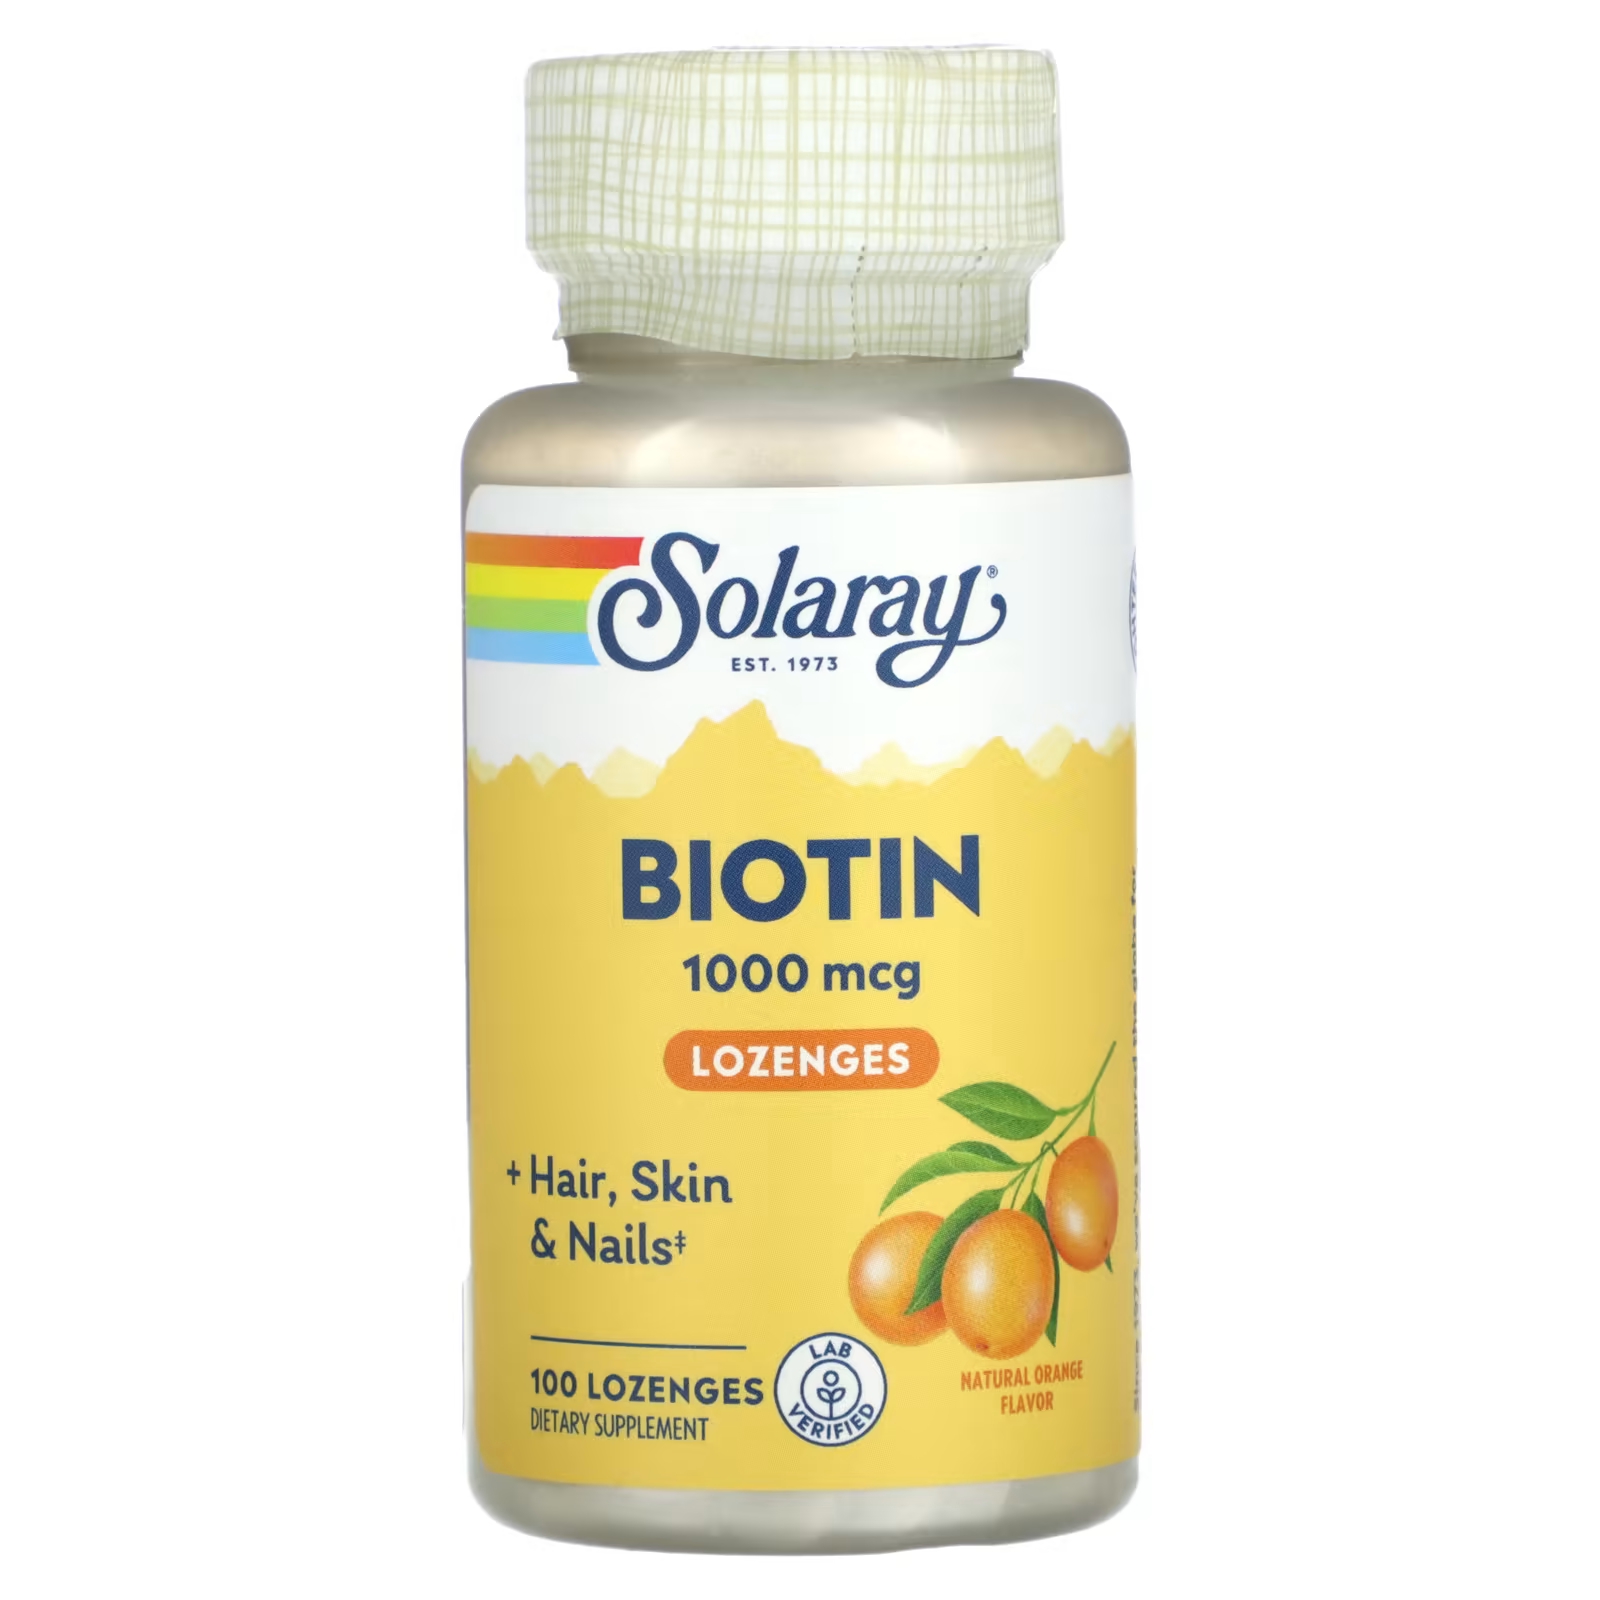 Пищевая добавка Solaray Биотин со вкусом апельсина, 100 капсул пищевая добавка bodyhealth устранение 100 капсул